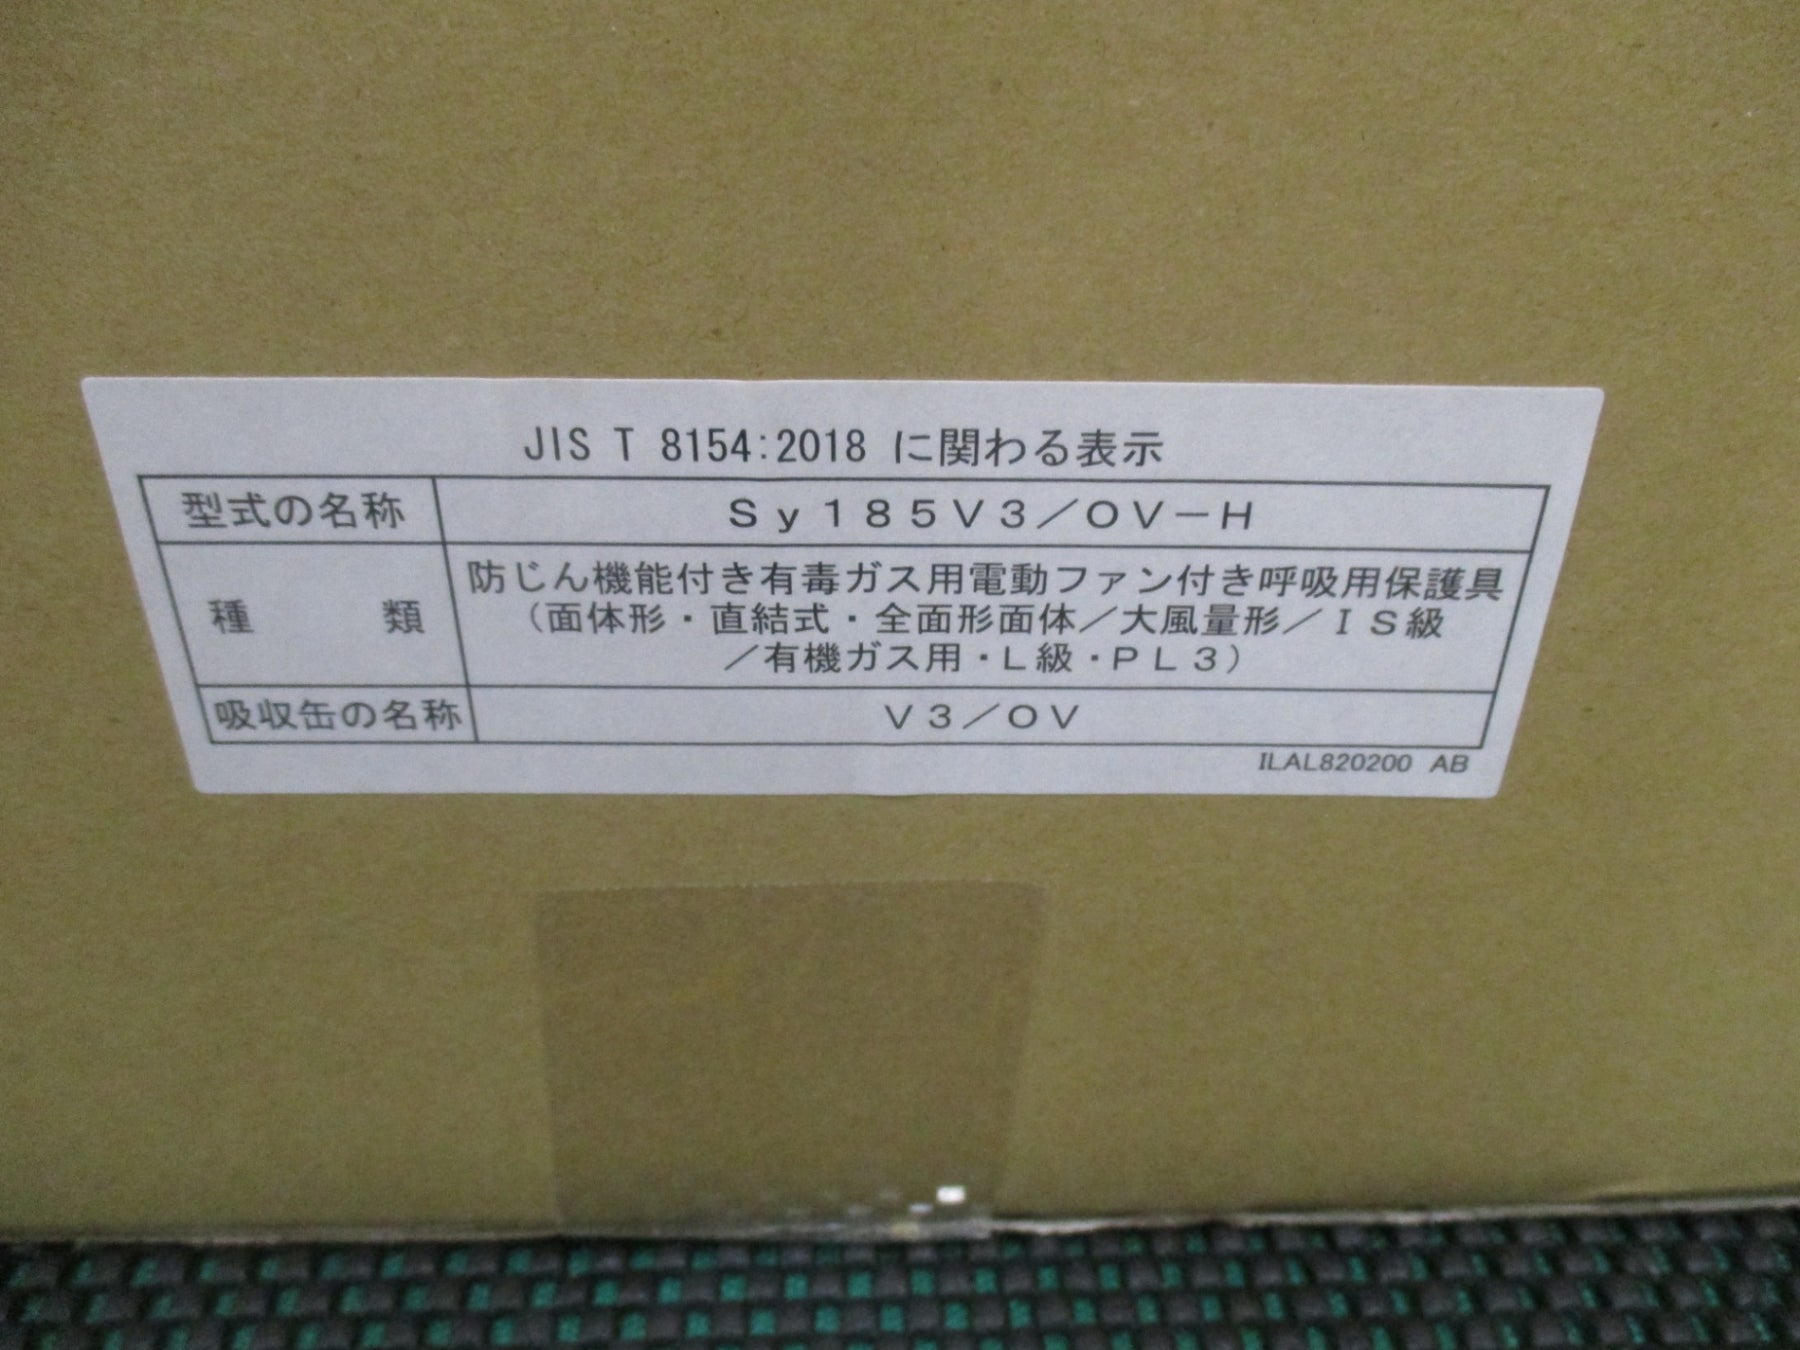 株)重松製作所 シゲマツ 電動ファン付き呼吸用保護具 Sy185-H(M) SY185 